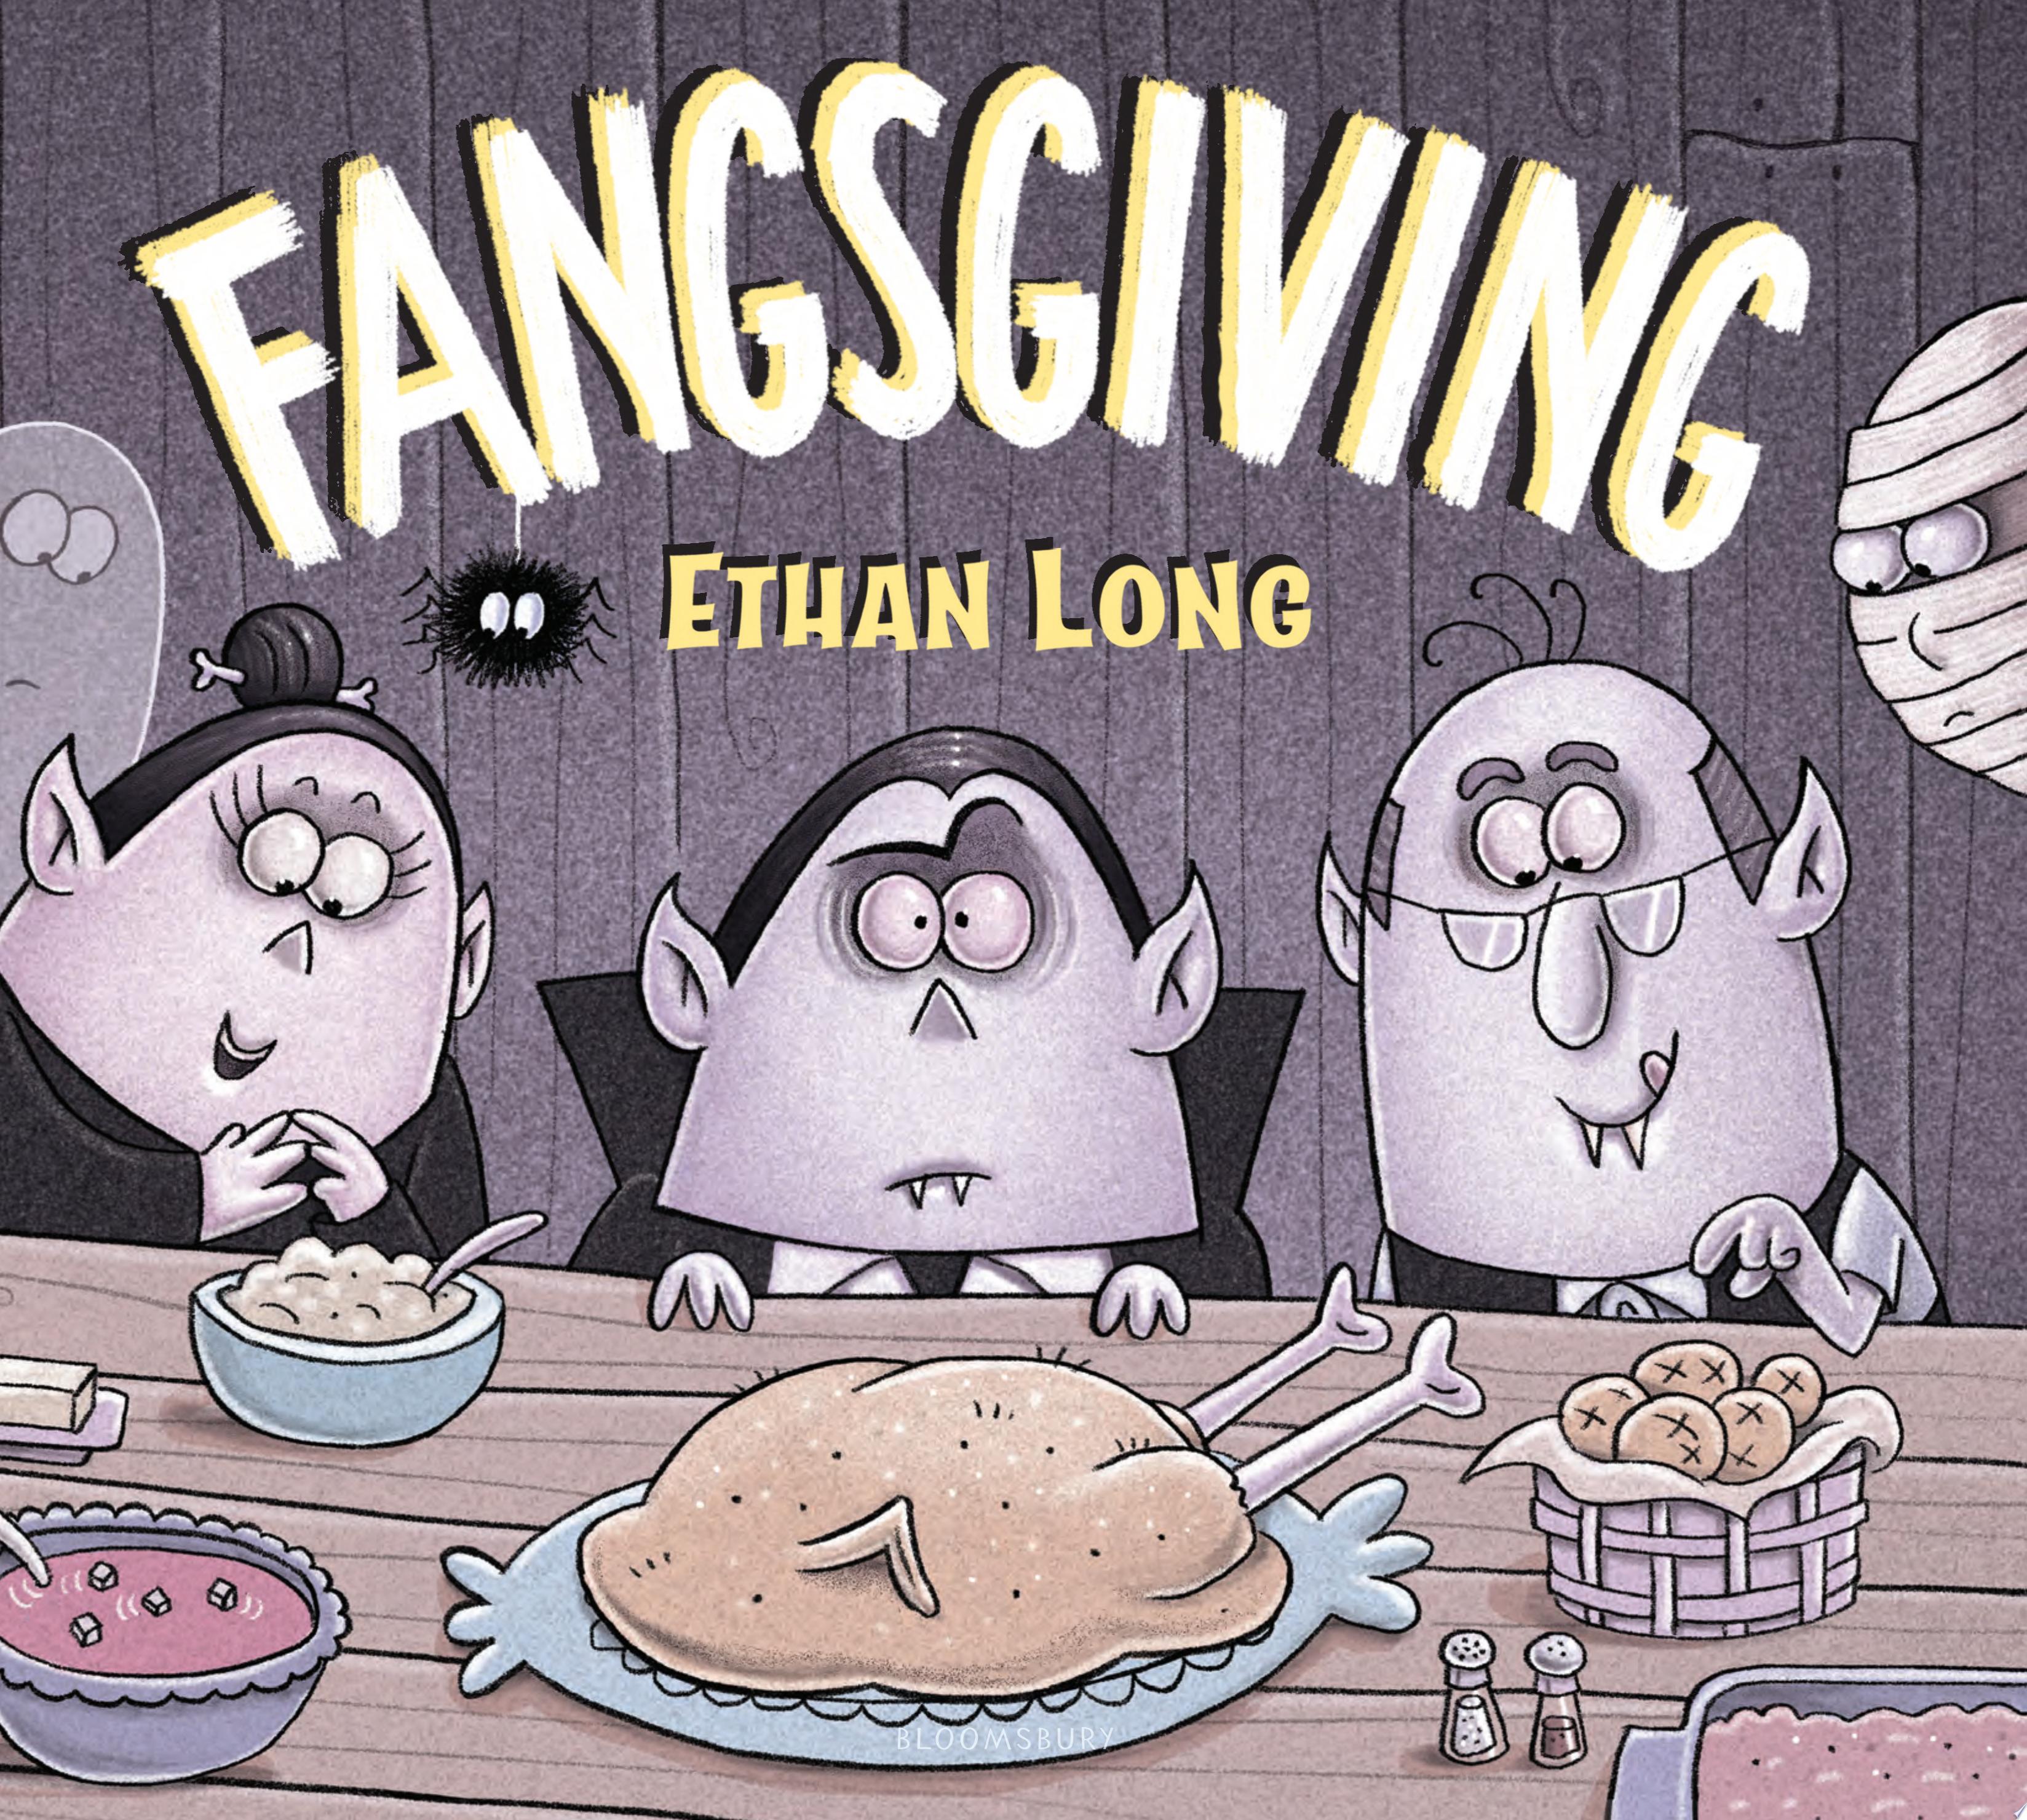 Image for "Fangsgiving"